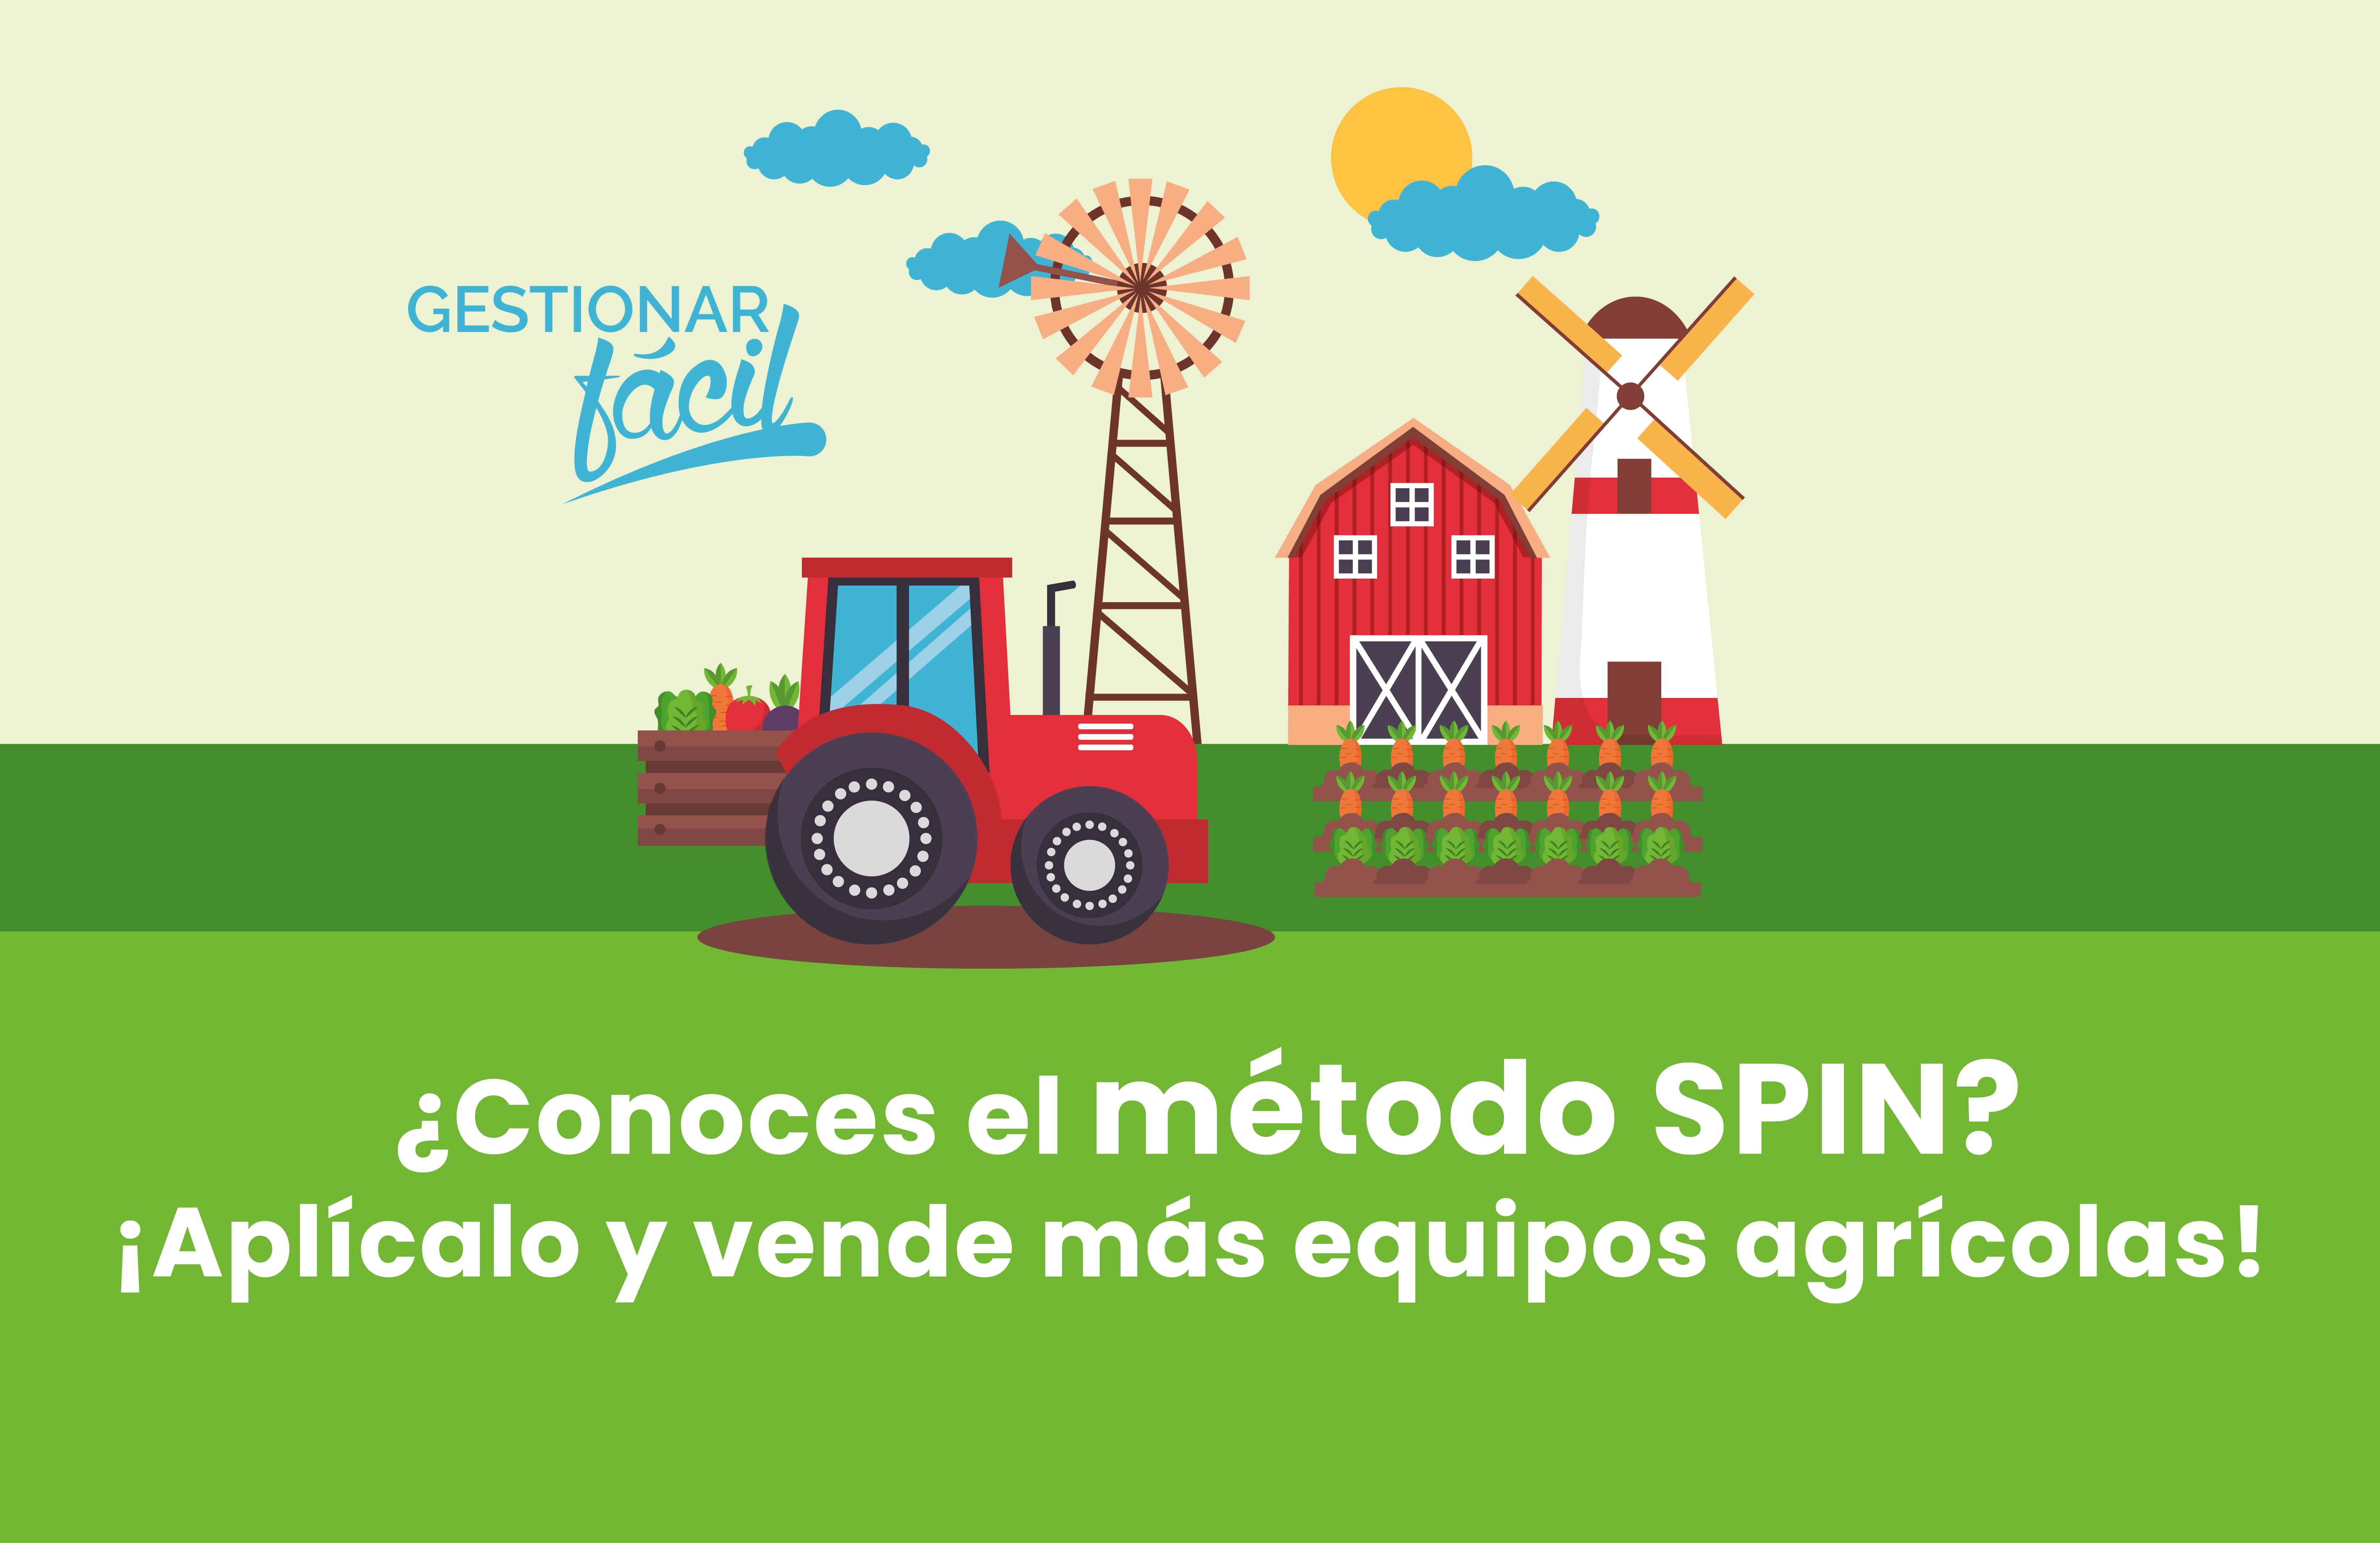 Cómo aplicar el método SPIN para vender equipos agrícolas